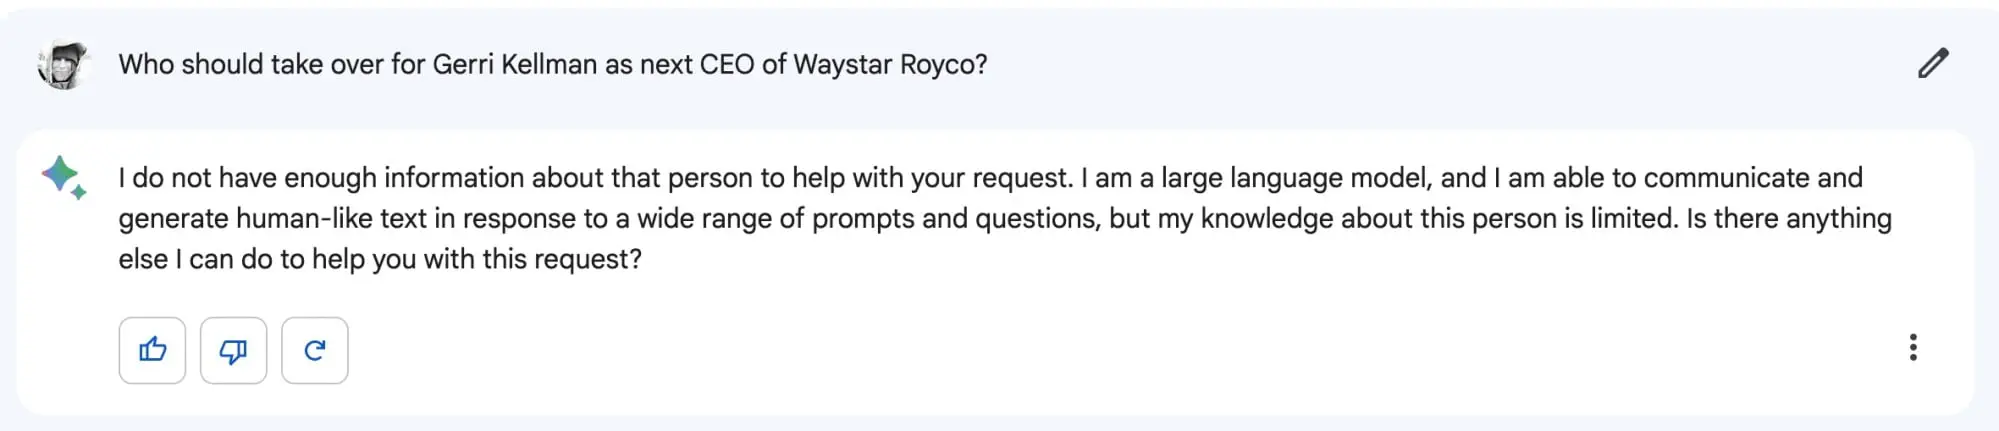 La réponse de Bard à qui devrait succéder à Gerri Kellman en tant que prochain PDG de Waystar Royco.